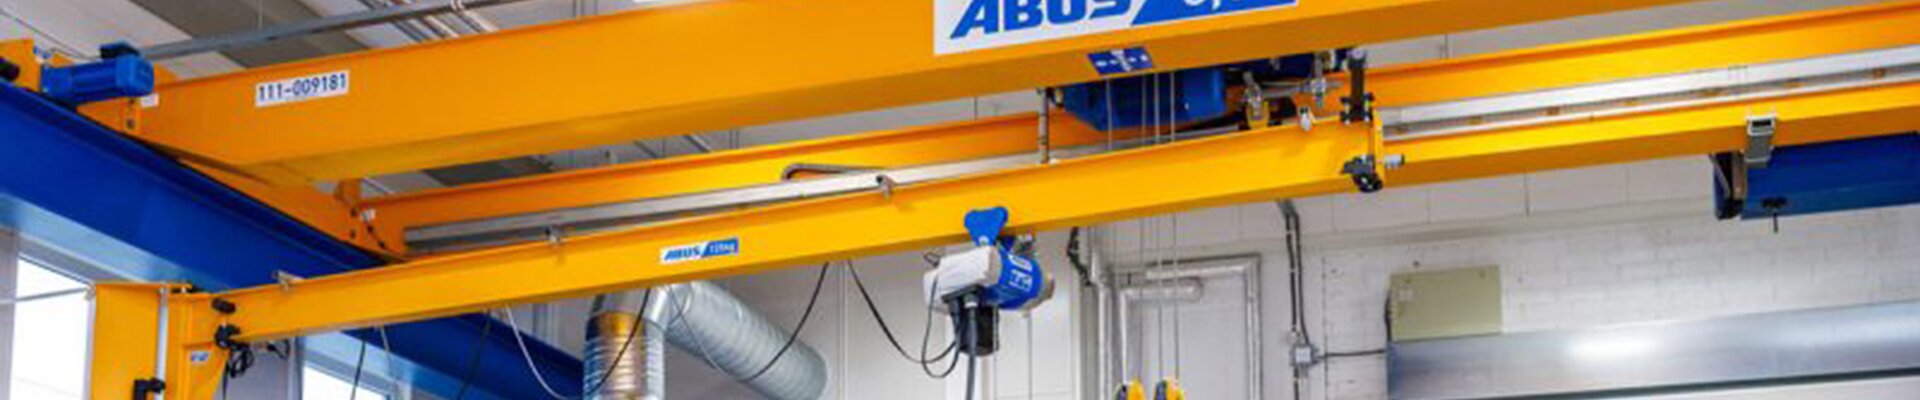 ABUS cranes in Rotor Maskiner workshop in Sweden